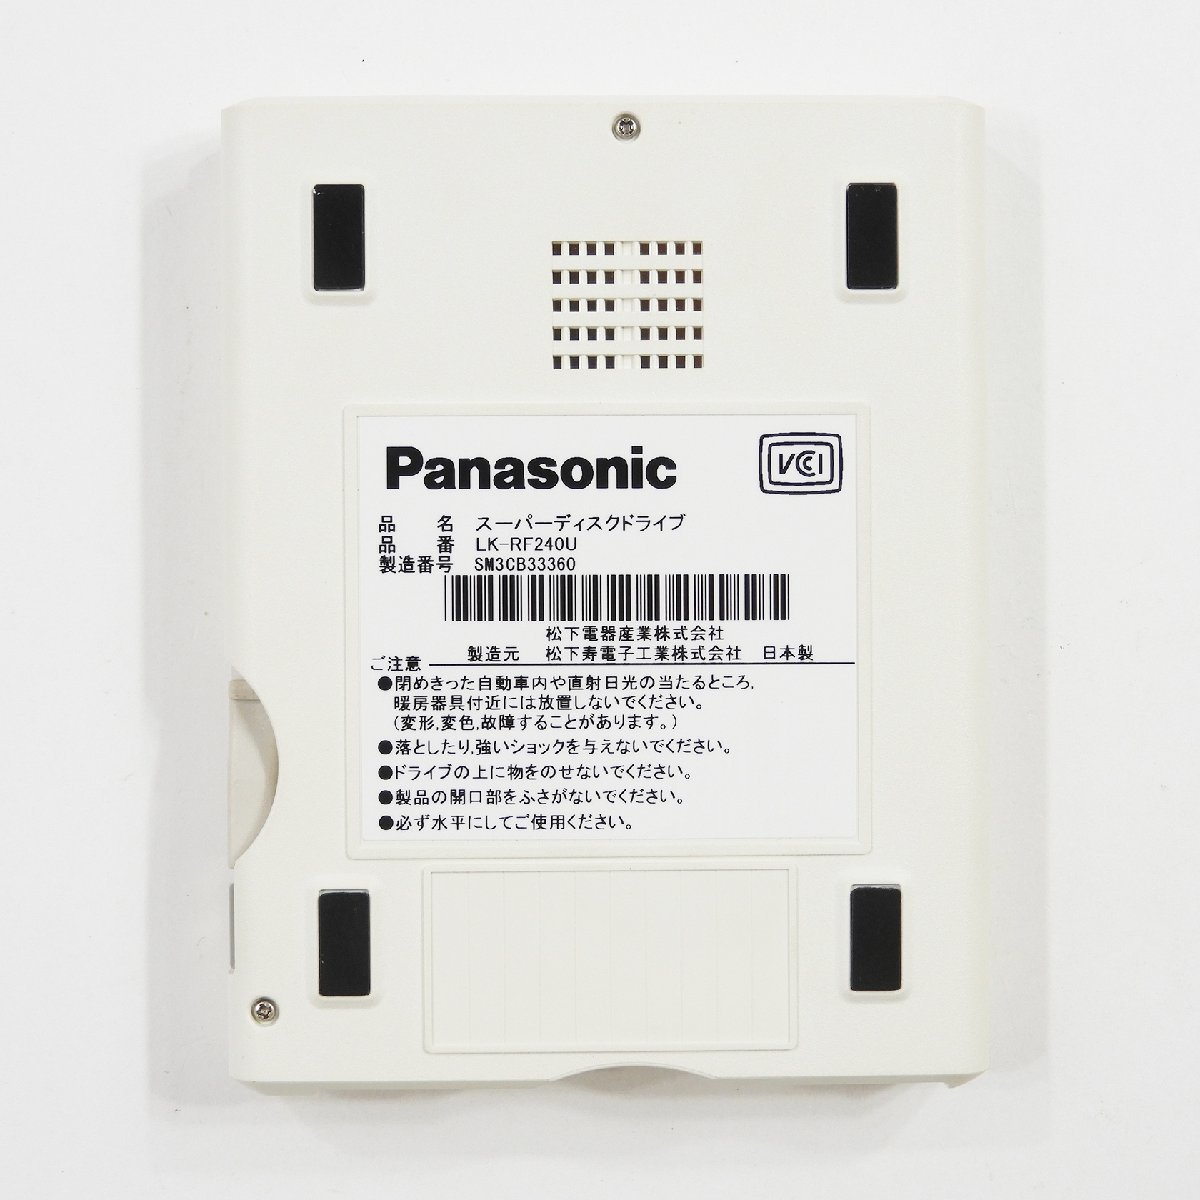 Panasonic パナソニック LK-RF-240U スーパーディスクドライブ 外付けFDD フロッピーディスクドライブ #14849 PC アクセサリー_画像3